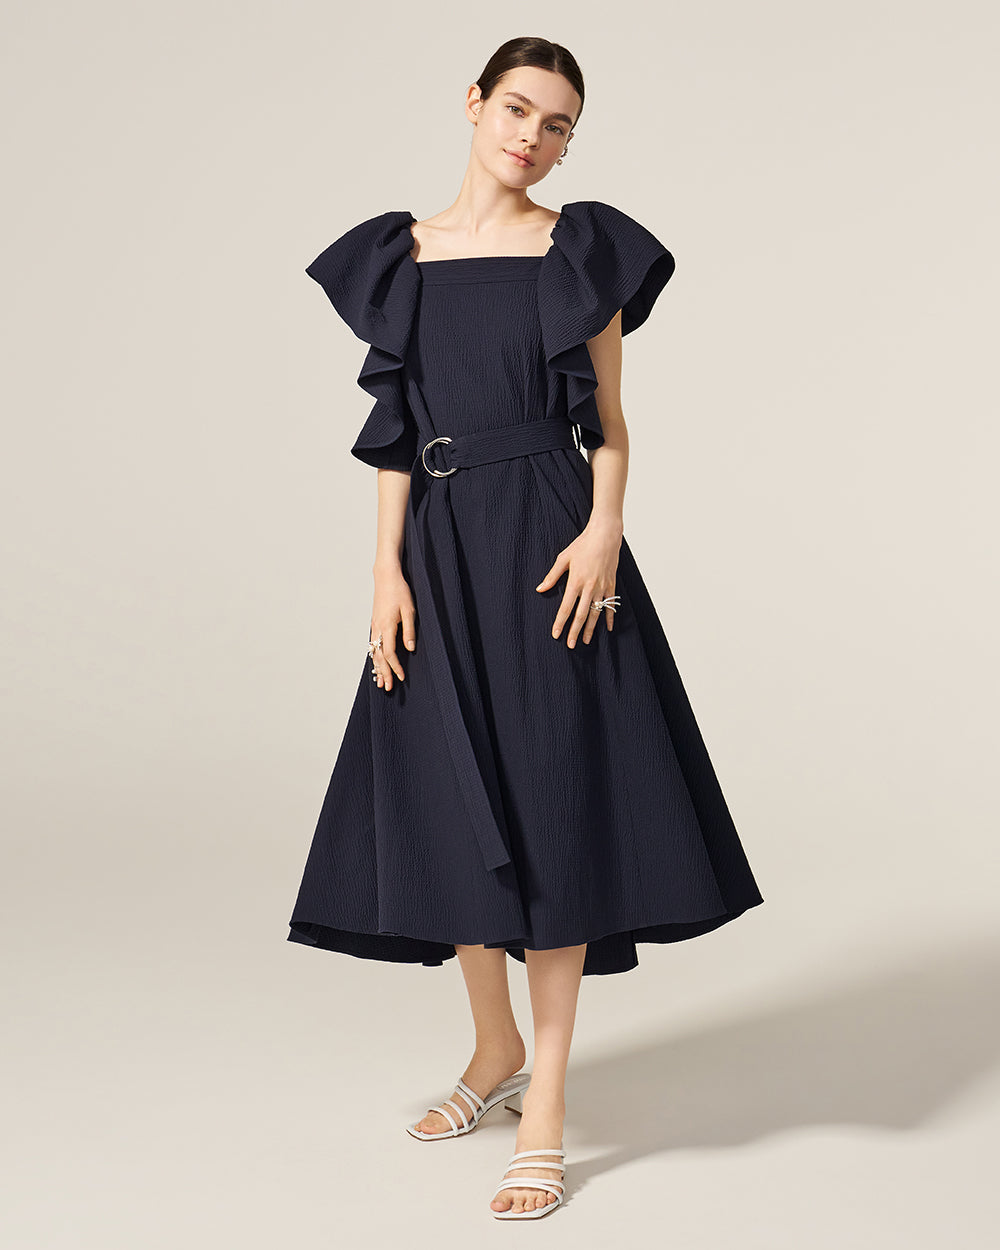 Luxury Designer Dresses for Women – ADEAM